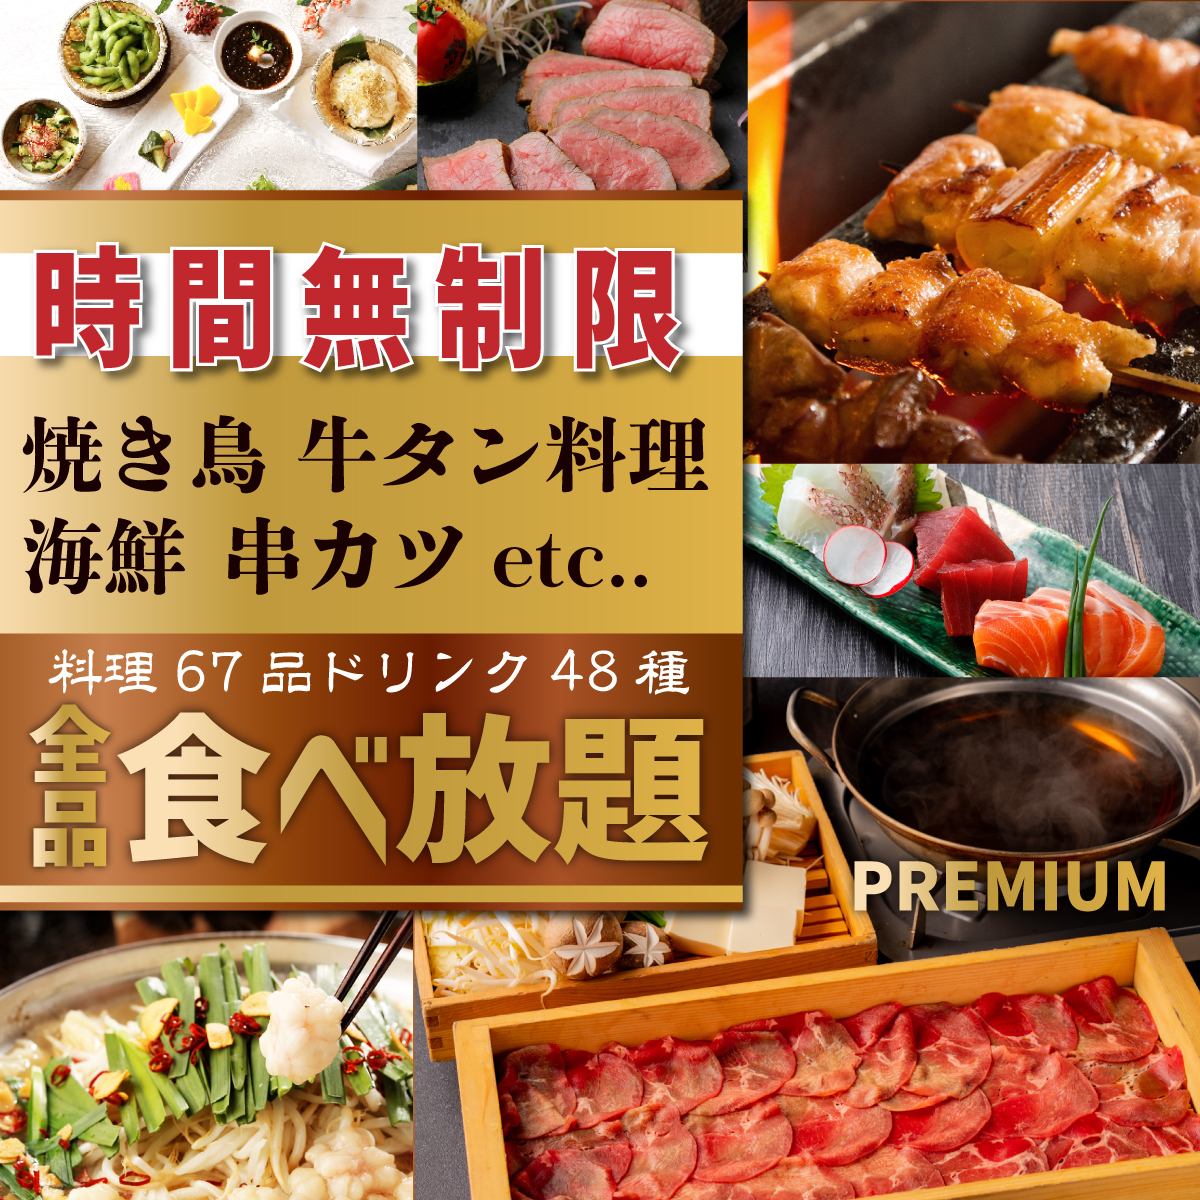 牛舌、烤雞肉串、海鮮等全品類無限暢飲4,000日圓！